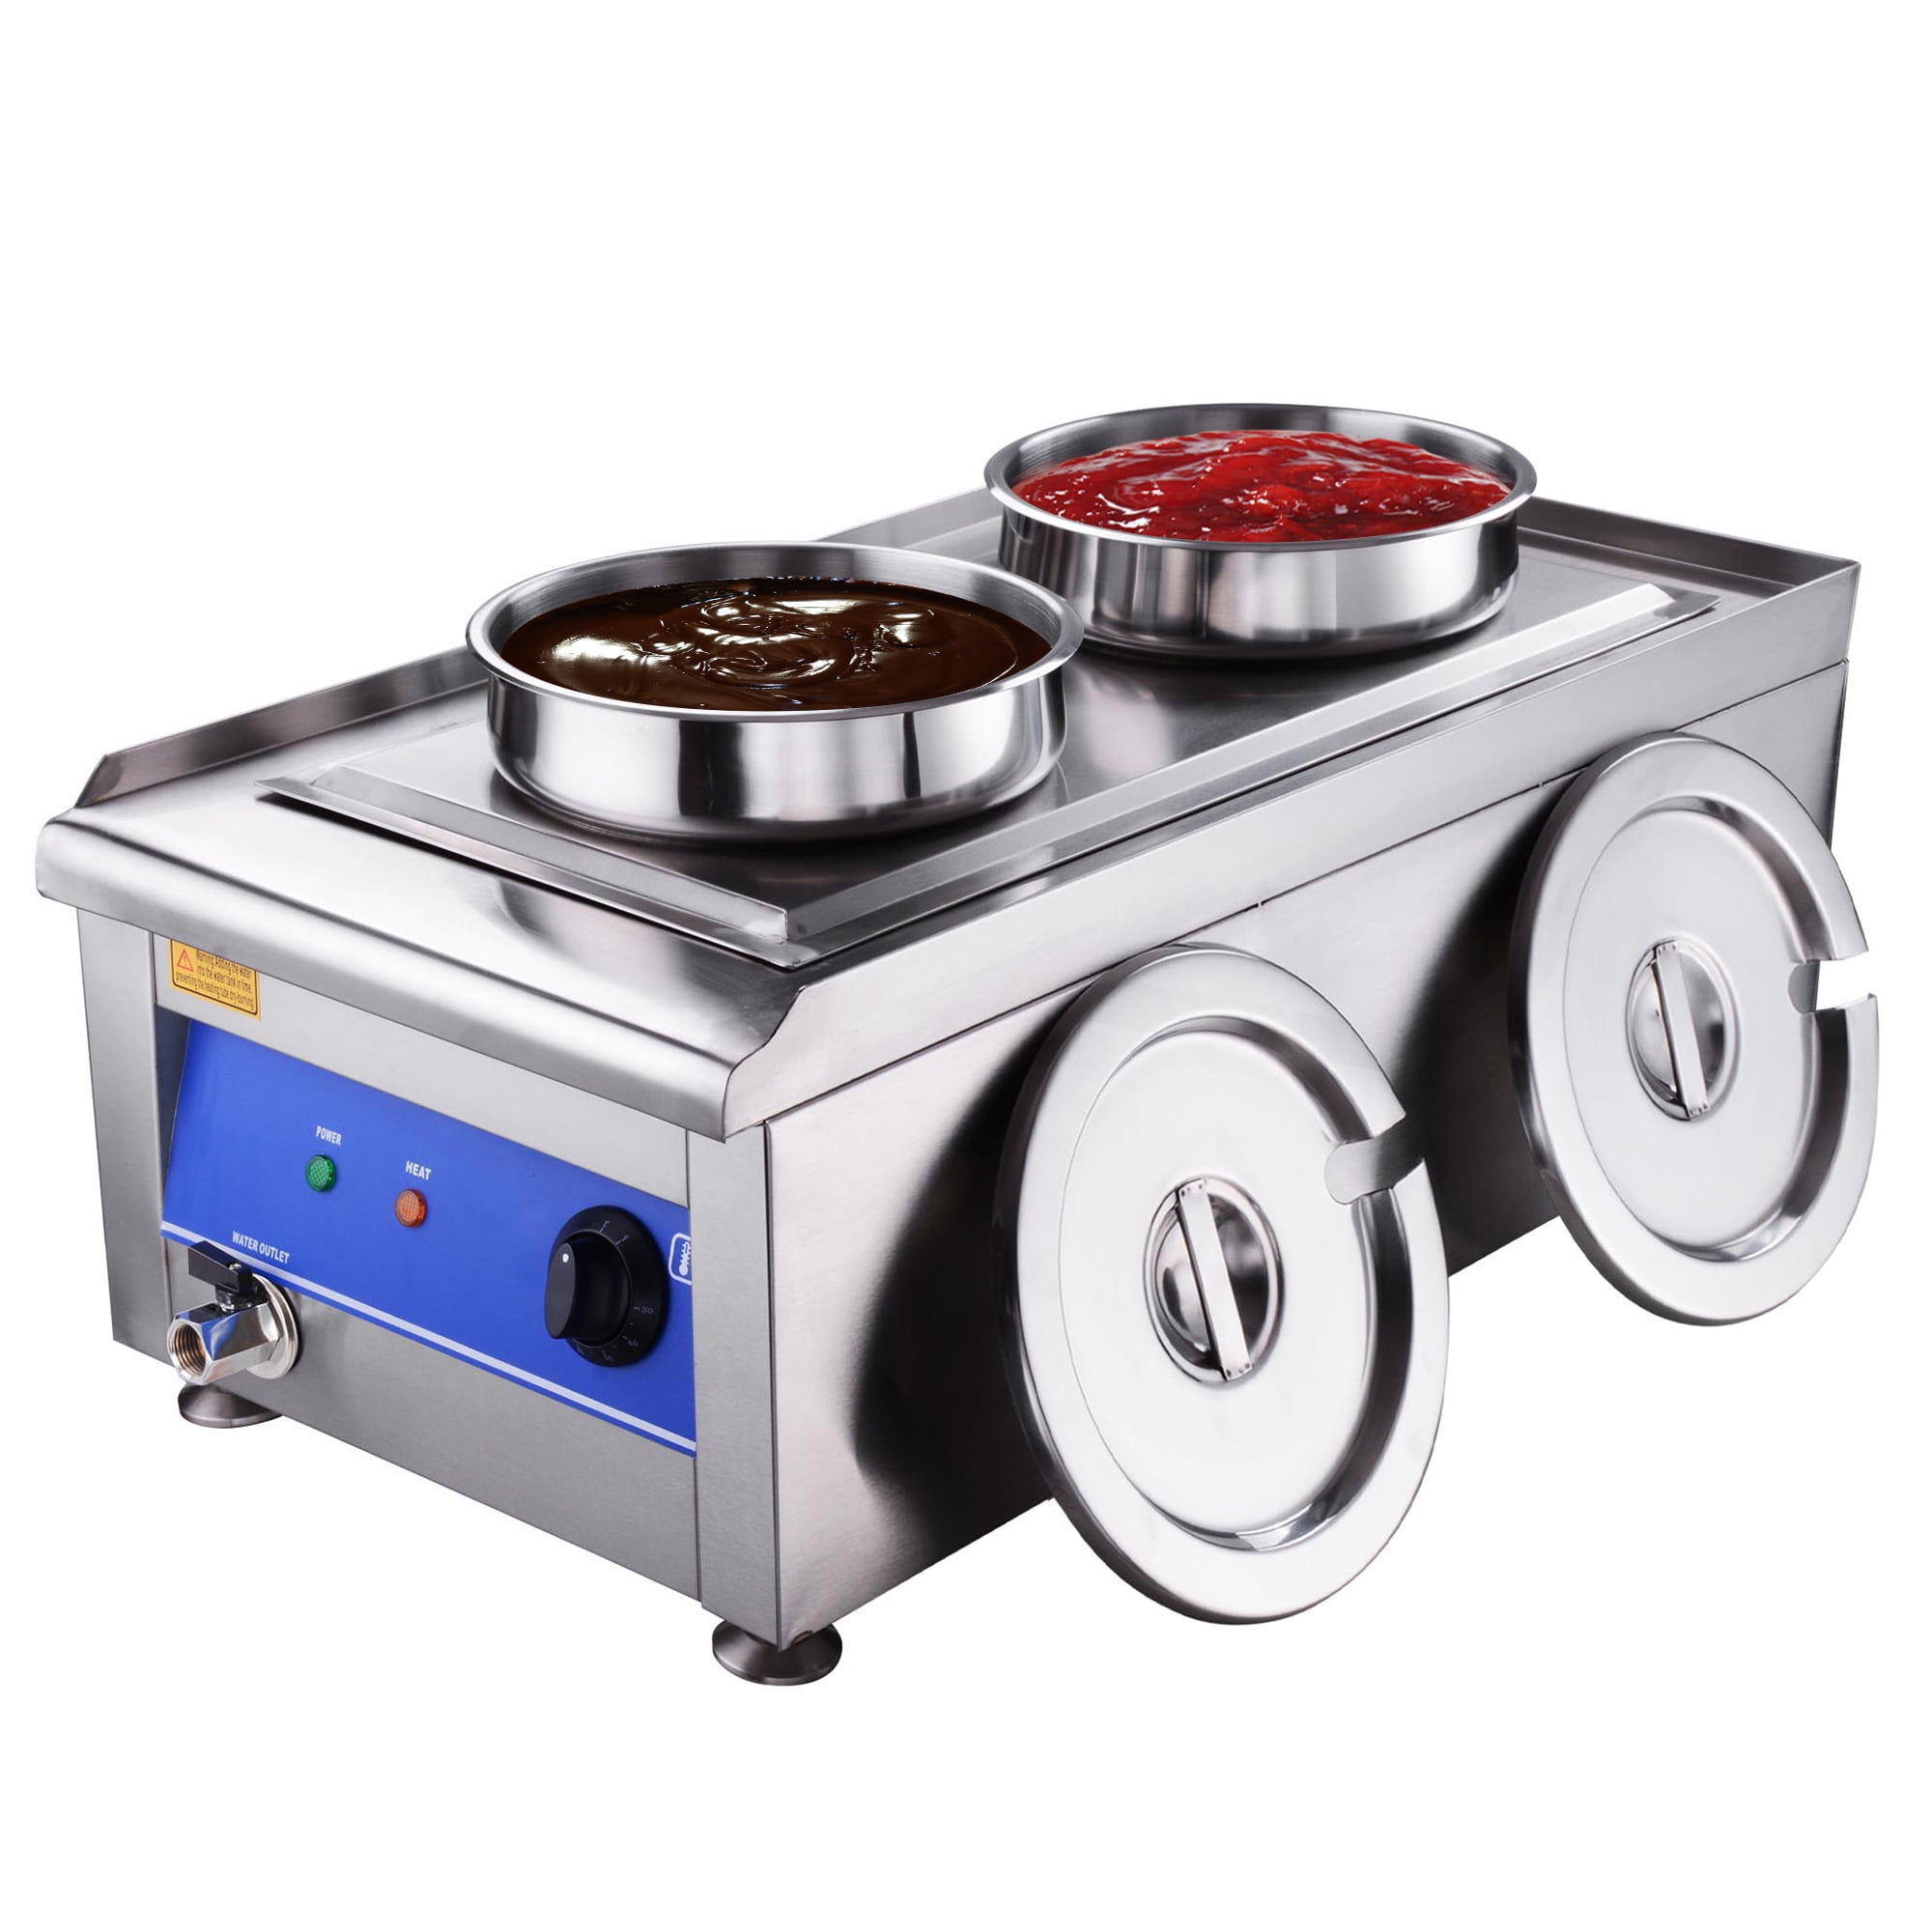  304 Stainless Steel Soup Kettle Food Buffet Warmer